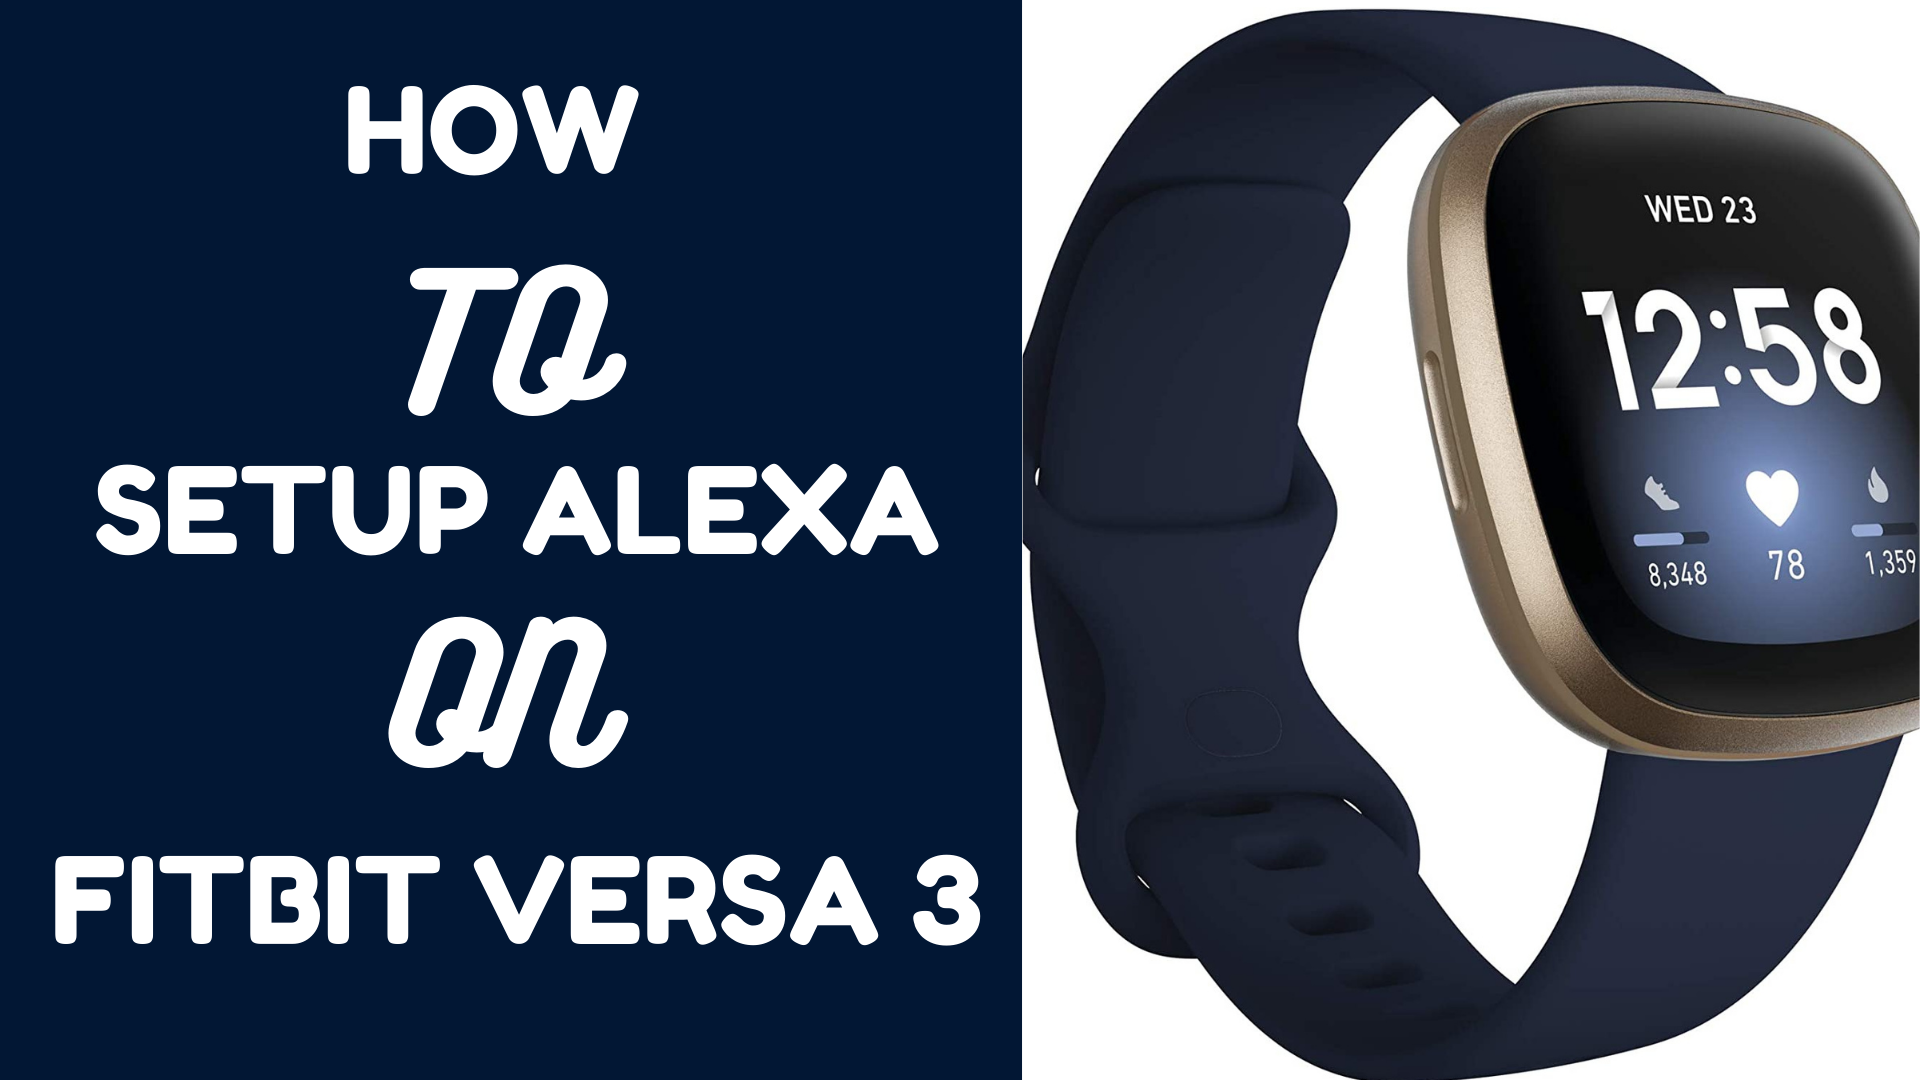 how to setup Alexa on Versa 3